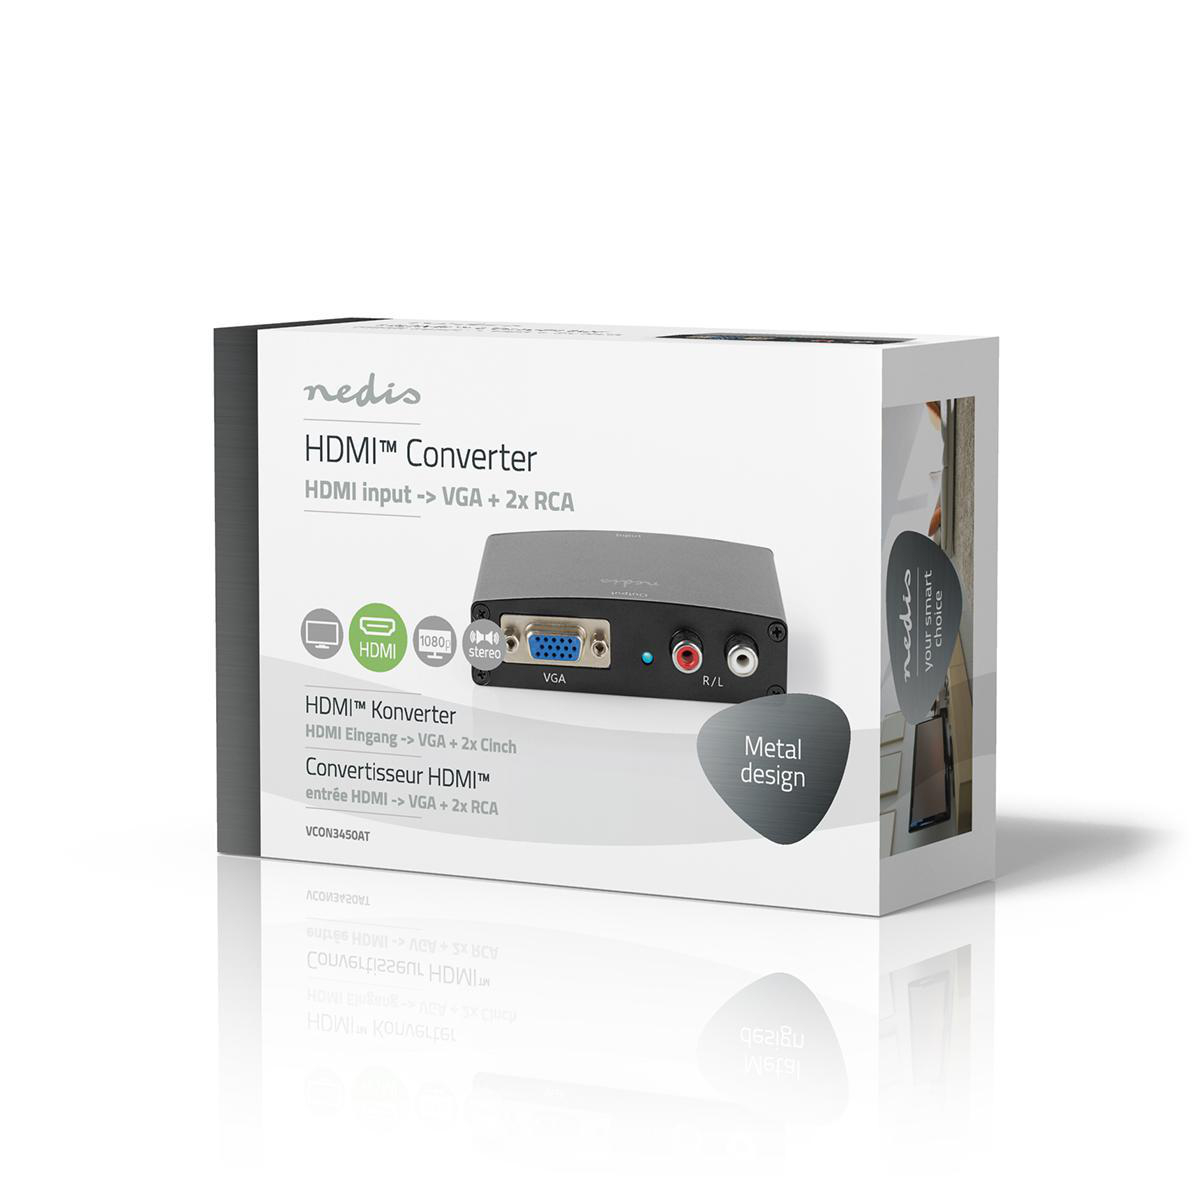 NEDIS VCON3450AT HDMI Converter